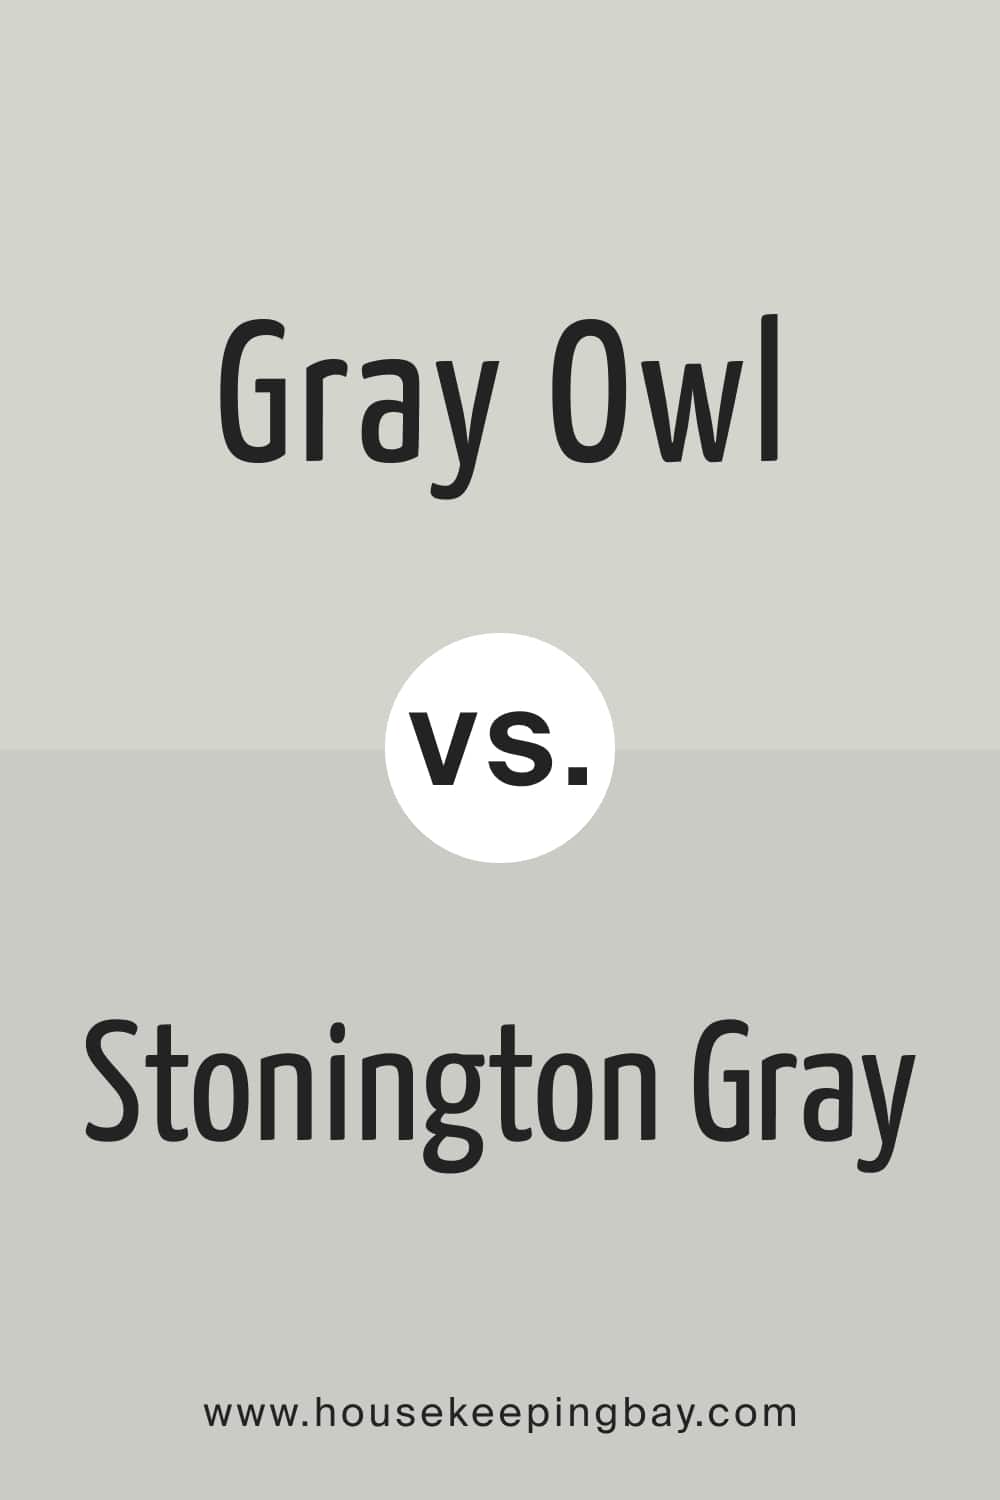 Gray Owl vs. Stonington Gray